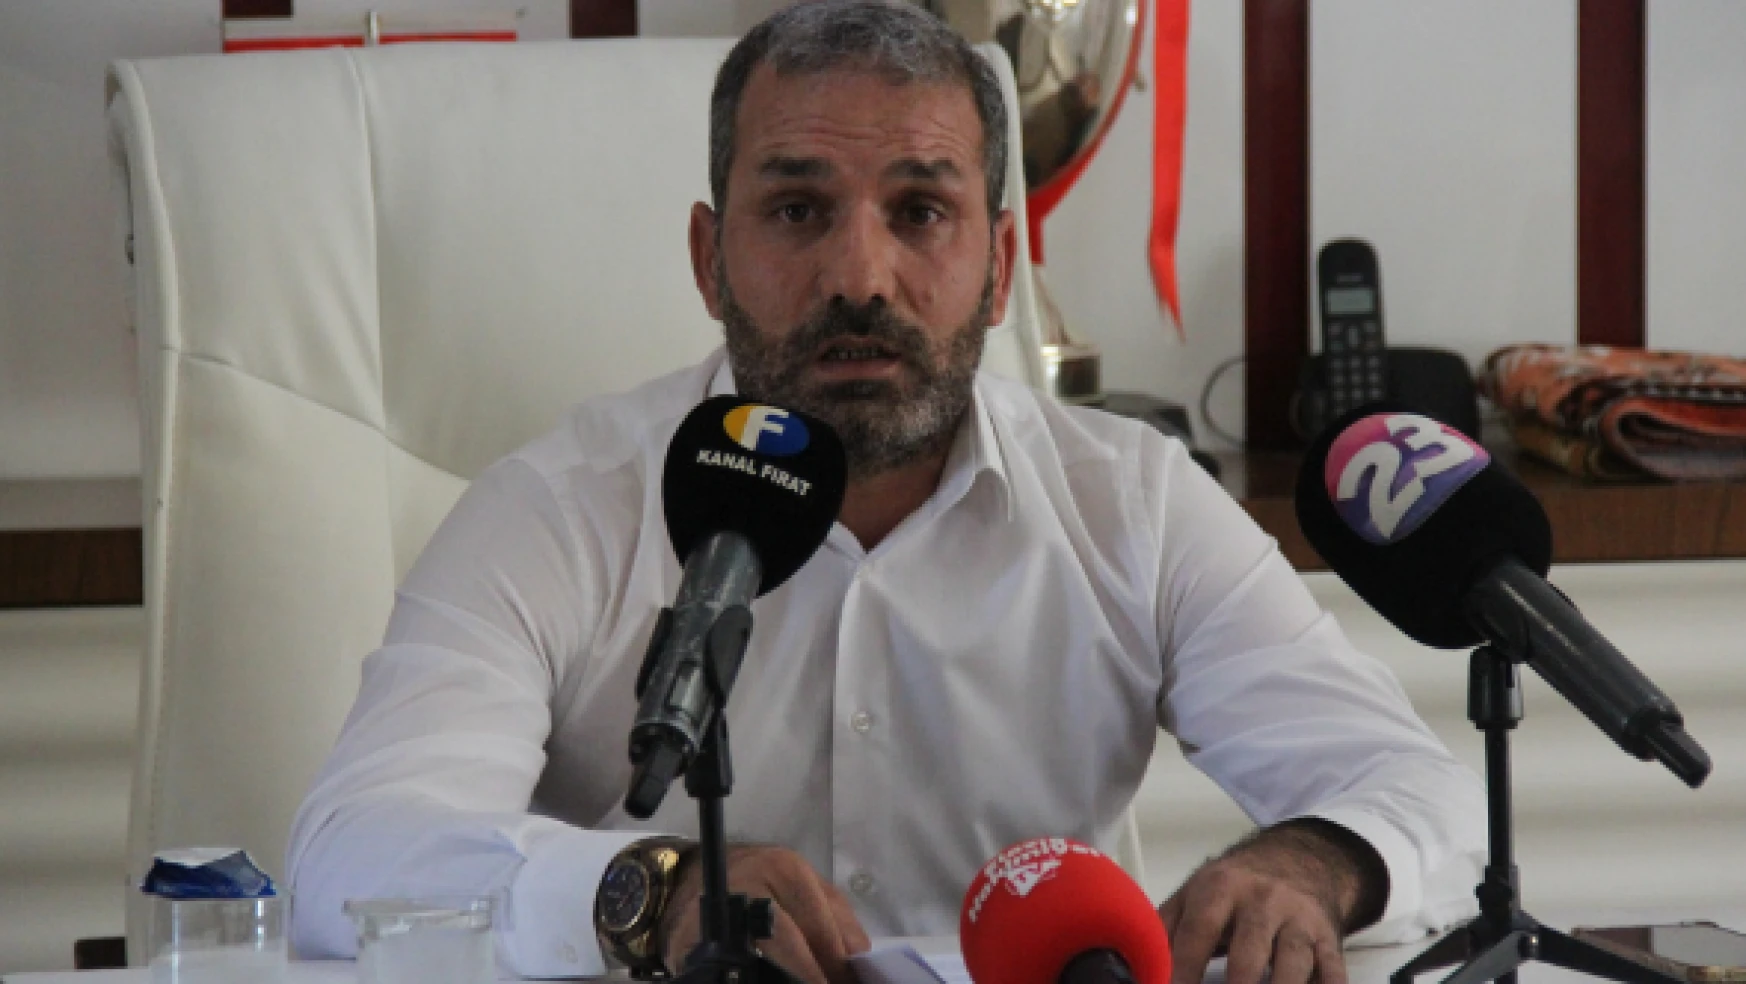 Elazığspor Başkanı Çayır: &quotGerekirse tüm borcu üstüme alır, kafama sıkarım"